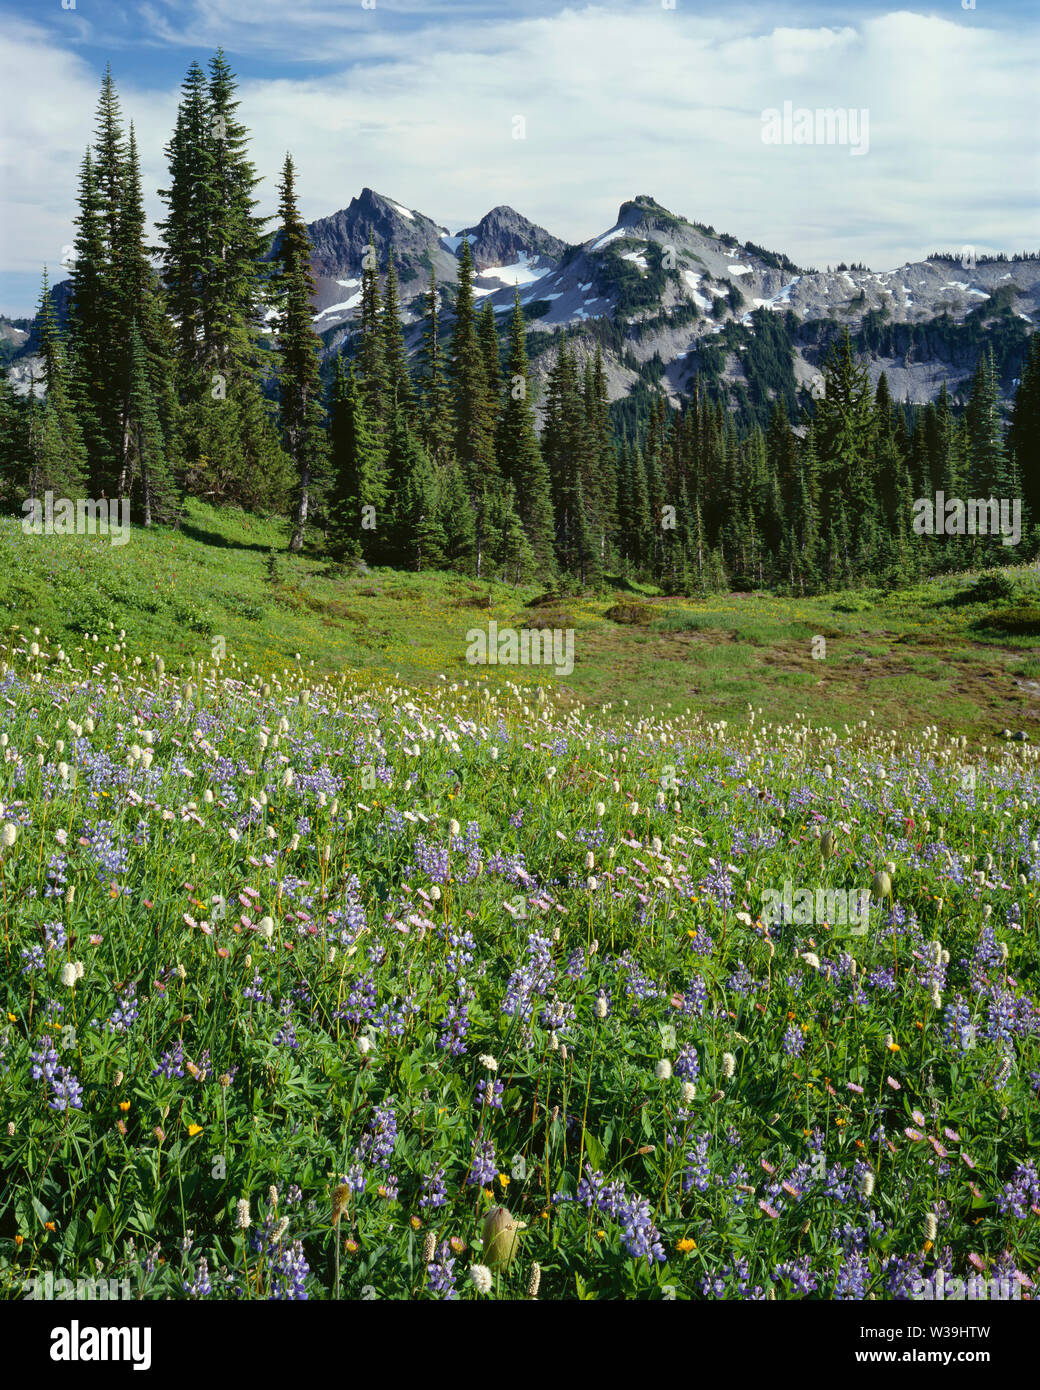 USA, Washington, Mt. Rainier National Park, Lupinen und bistort Blüte in der Wiese auf Mazama Ridge mit dem tatoosh Bereich in der Ferne. Stockfoto